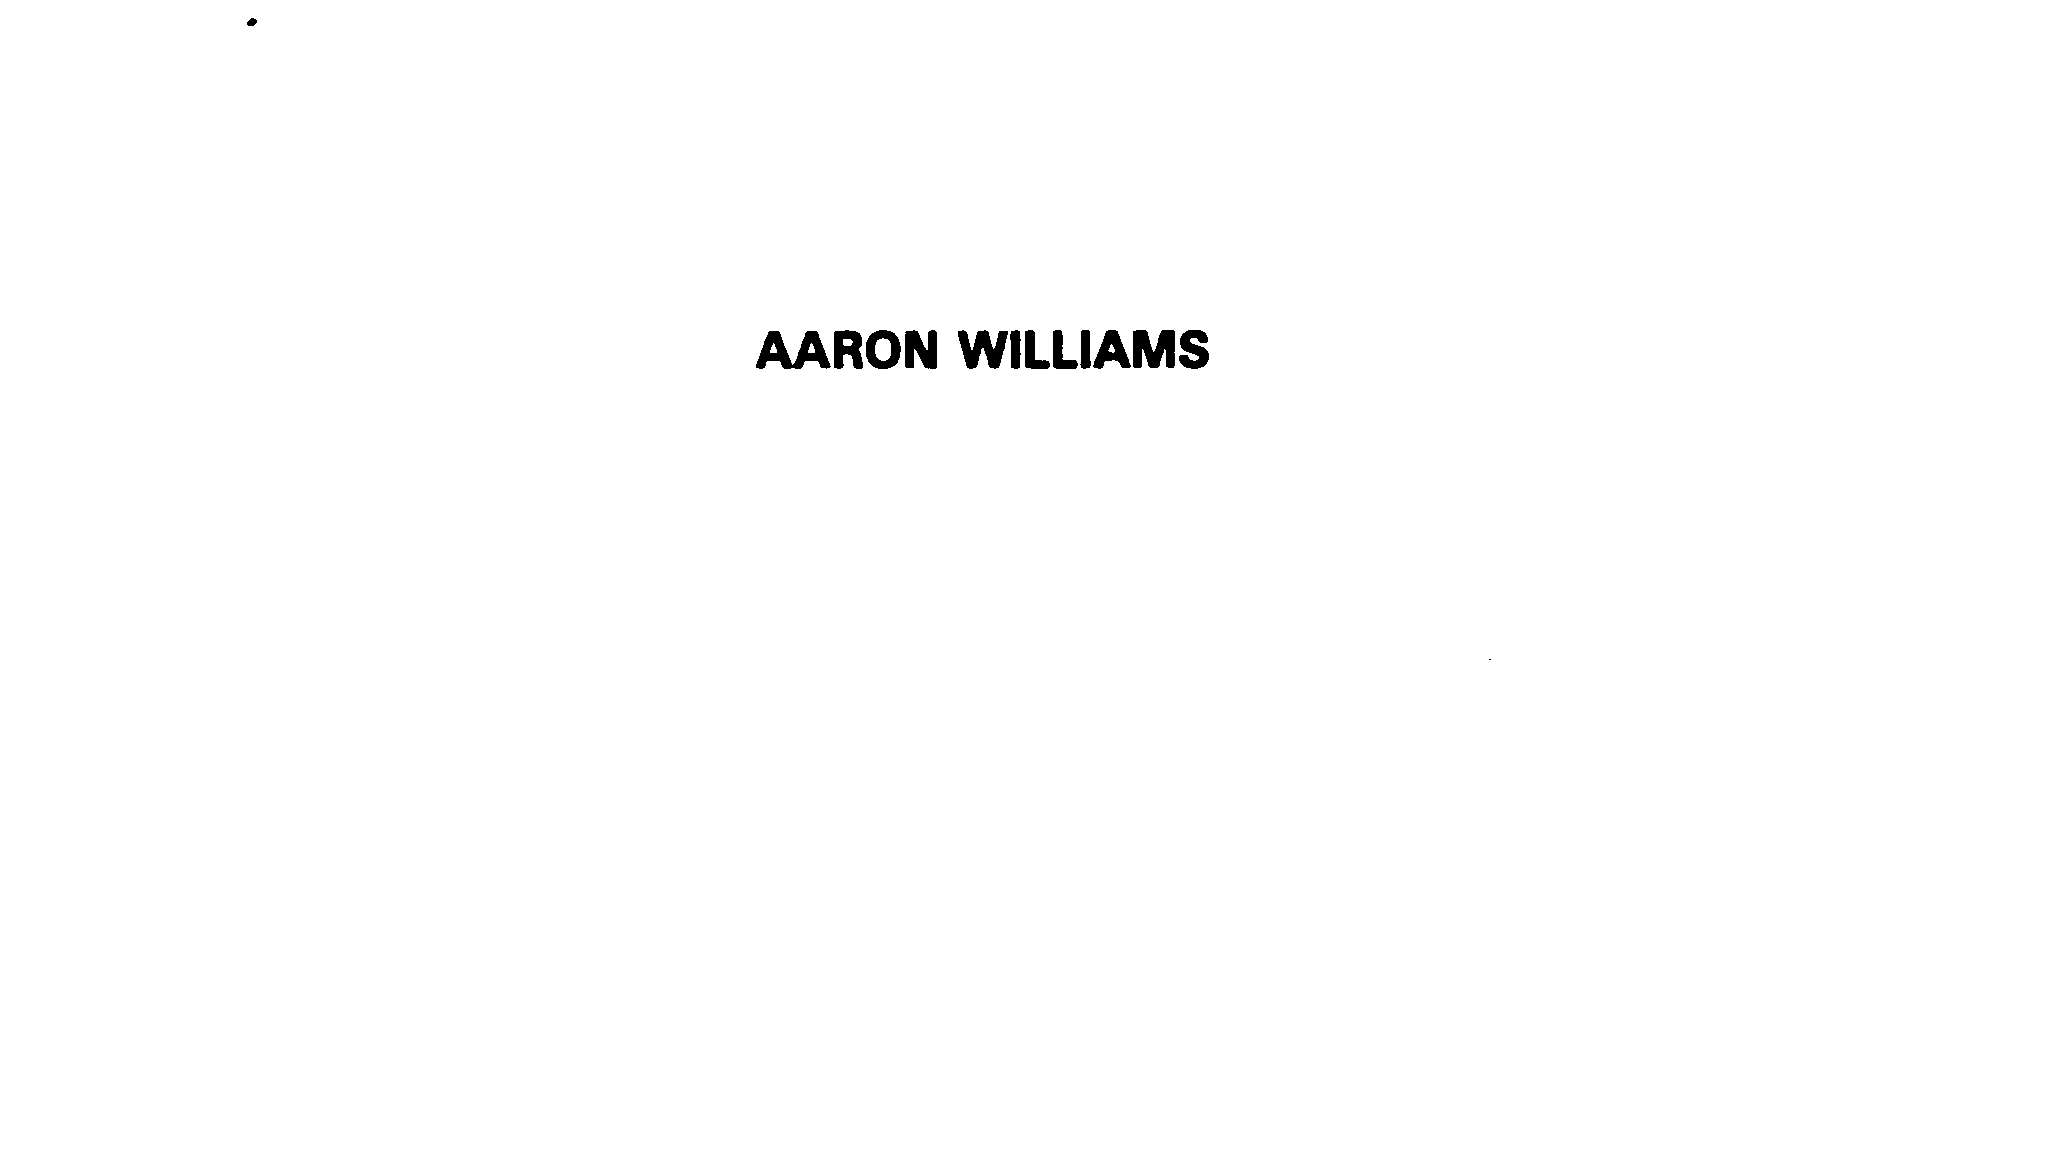 AARON WILLIAMS